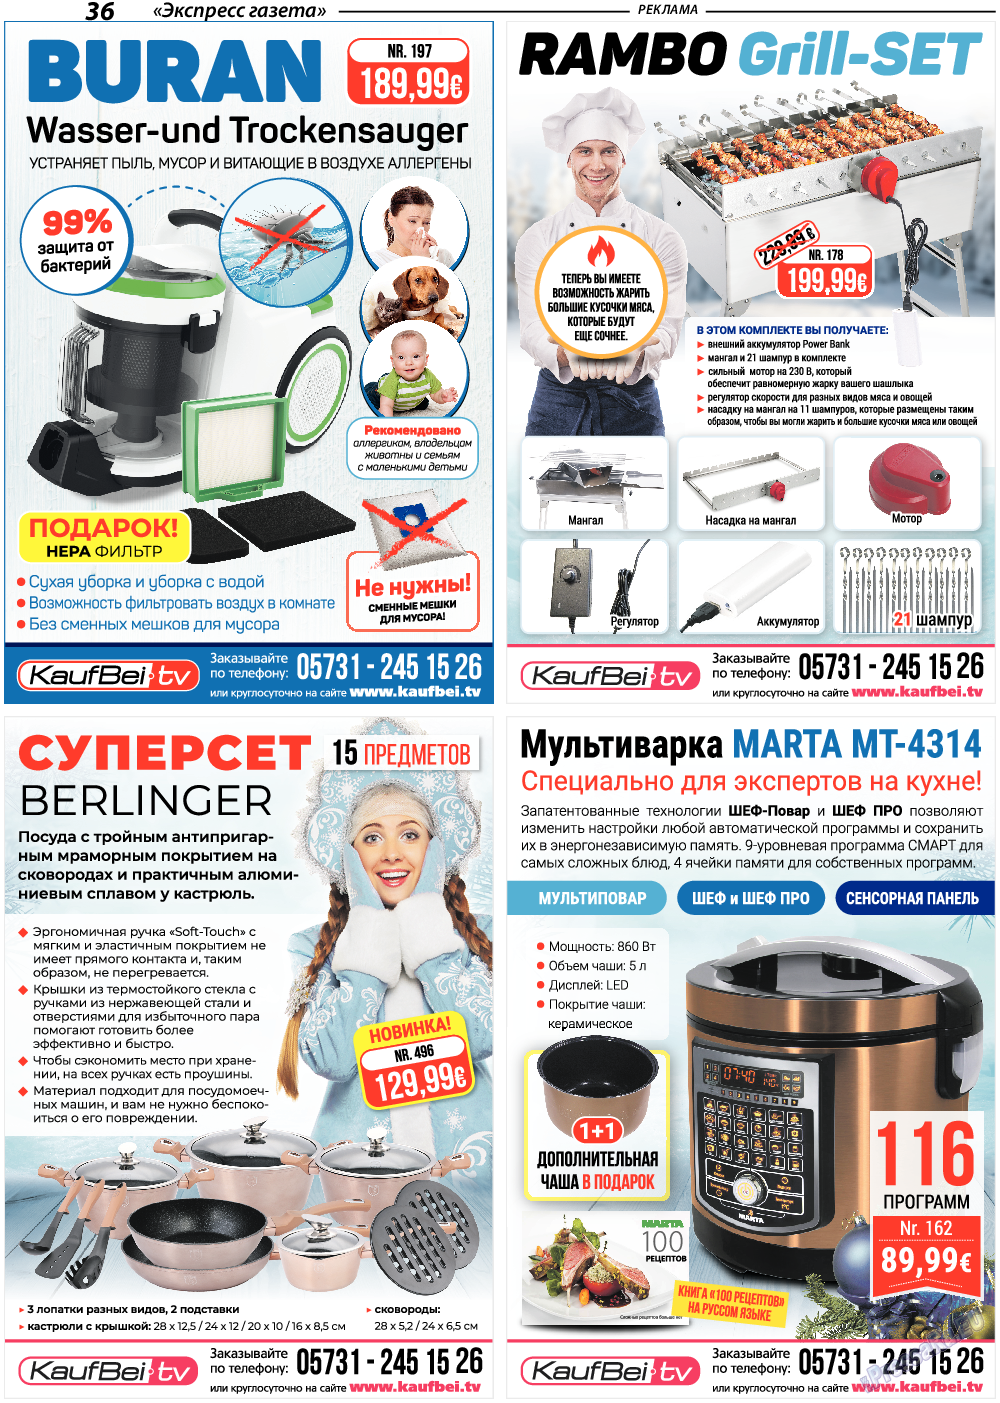 Экспресс газета, газета. 2019 №1 стр.36